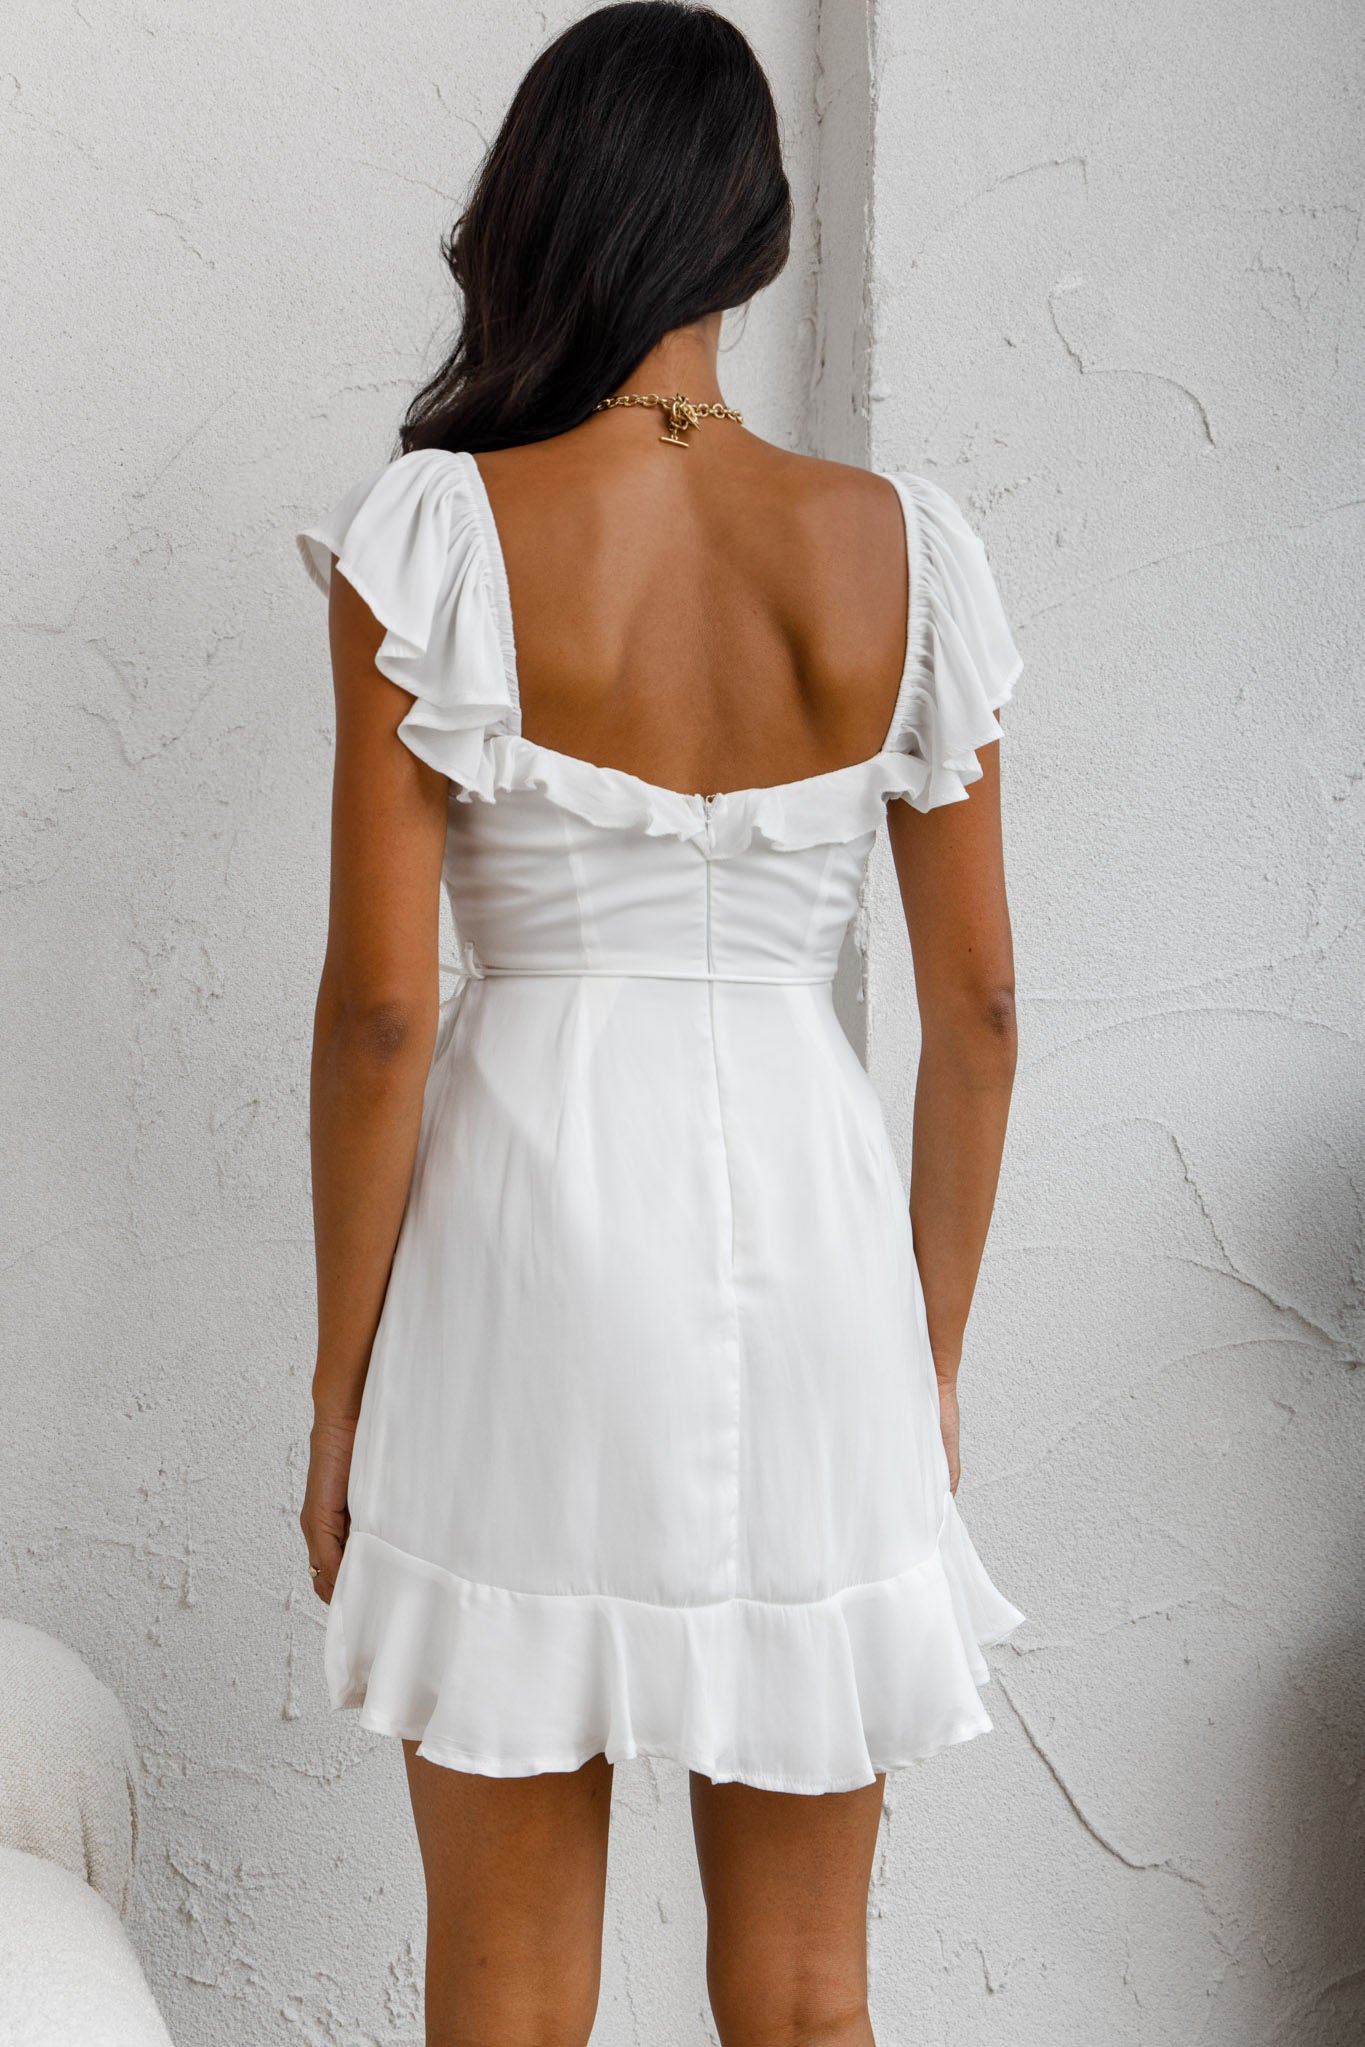 Selfie Leslie Women's Sorority One-Shoulder Ruffle Trim Dress White in Size M